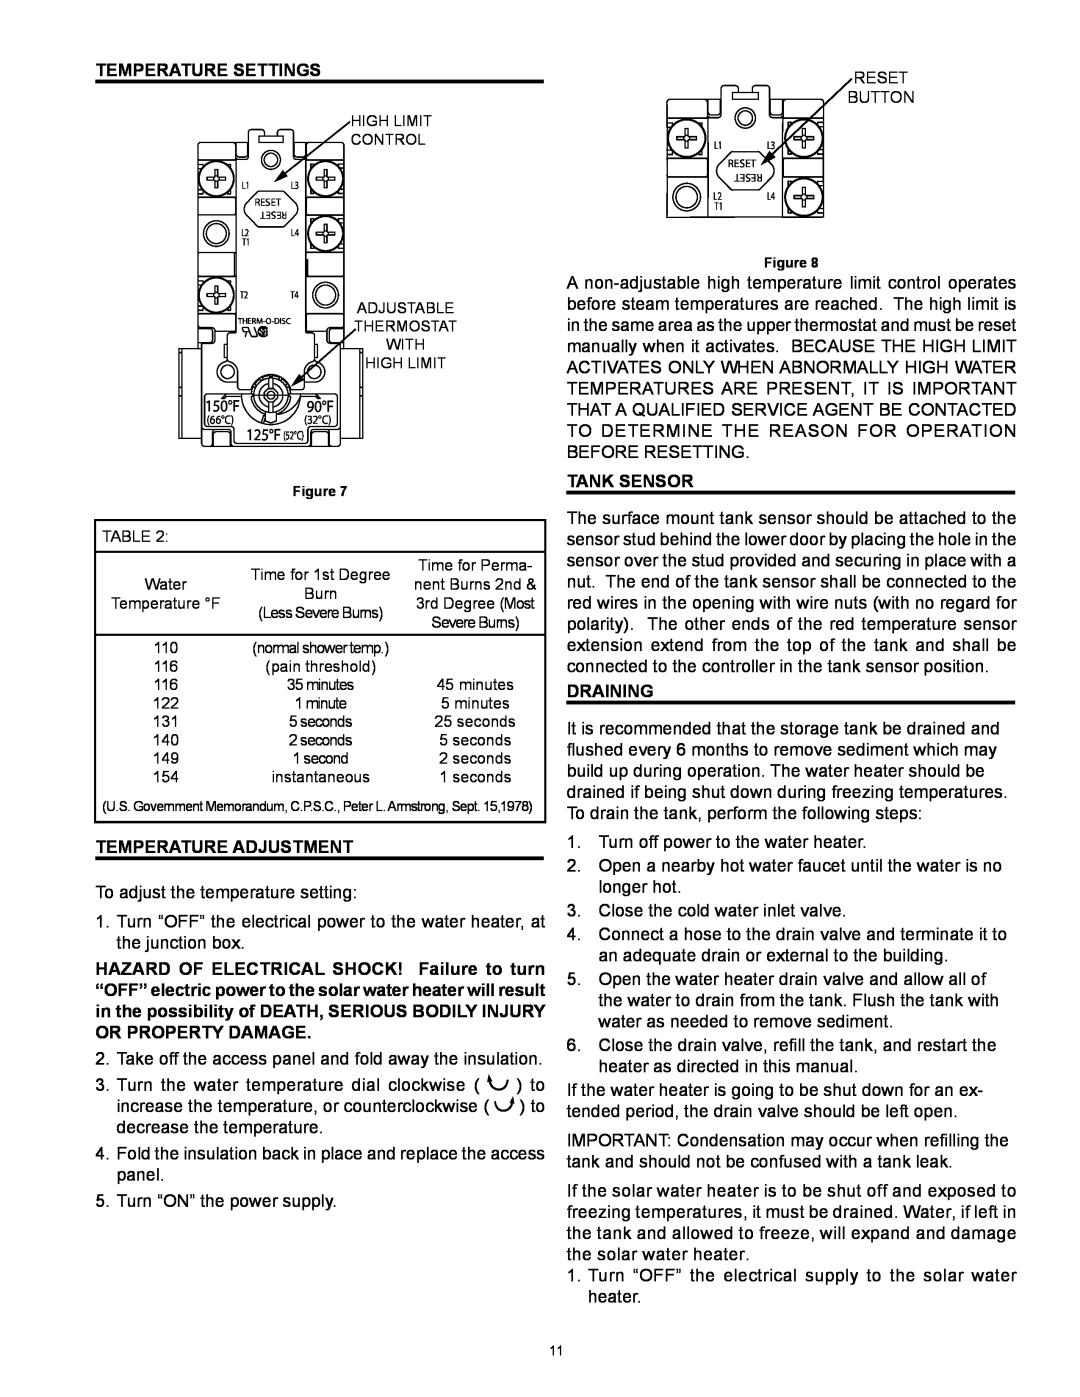 American Water Heater 318281-000 instruction manual Temperature Adjustment, Tank Sensor, Draining, Temperature Settings 